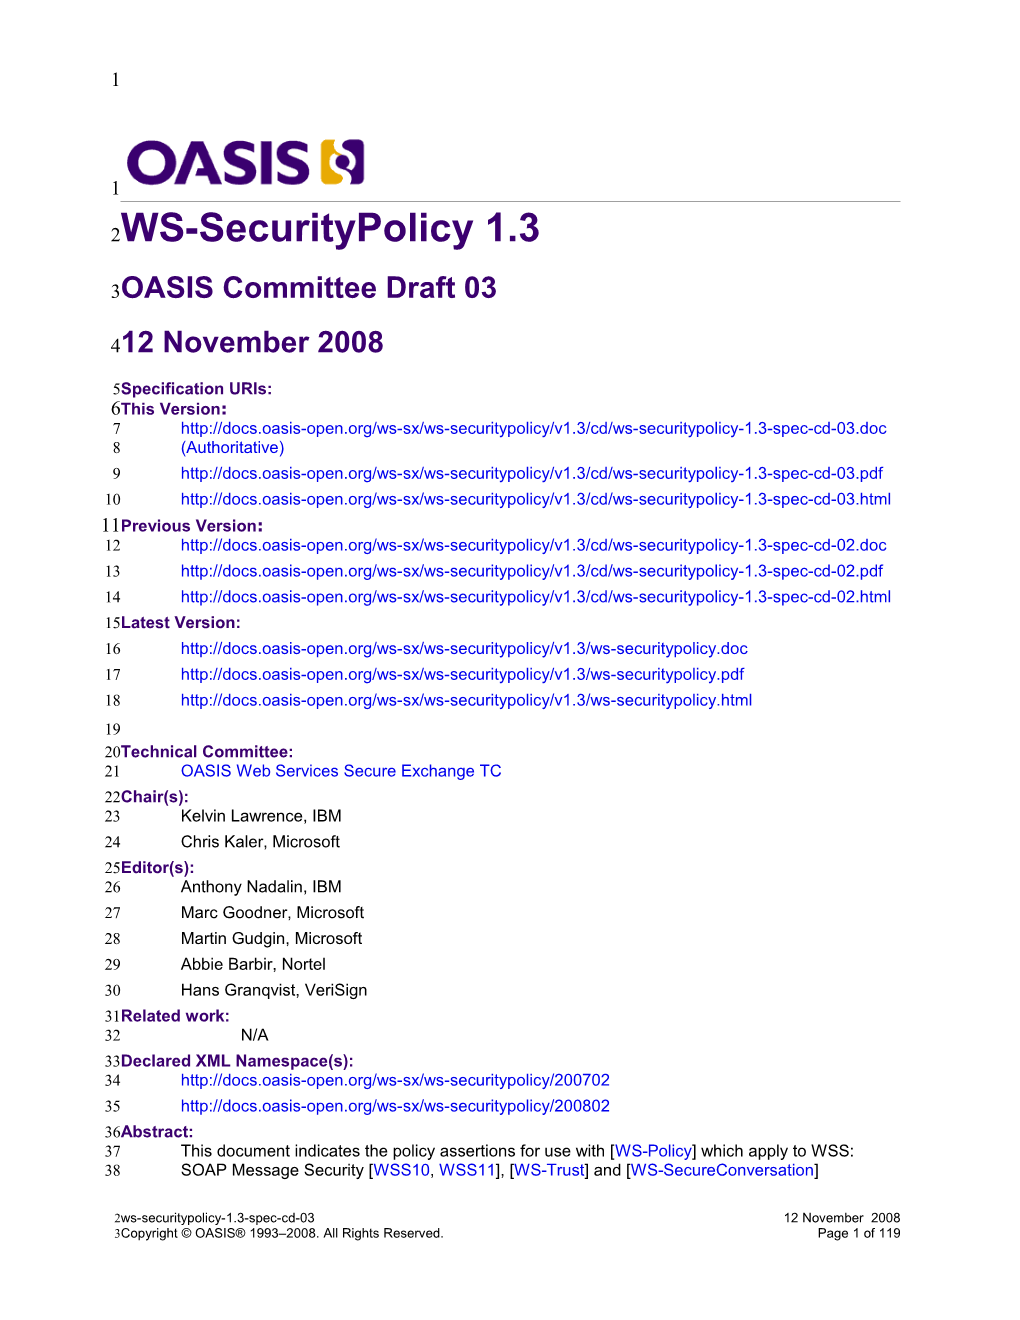 OASIS Committee Draft03